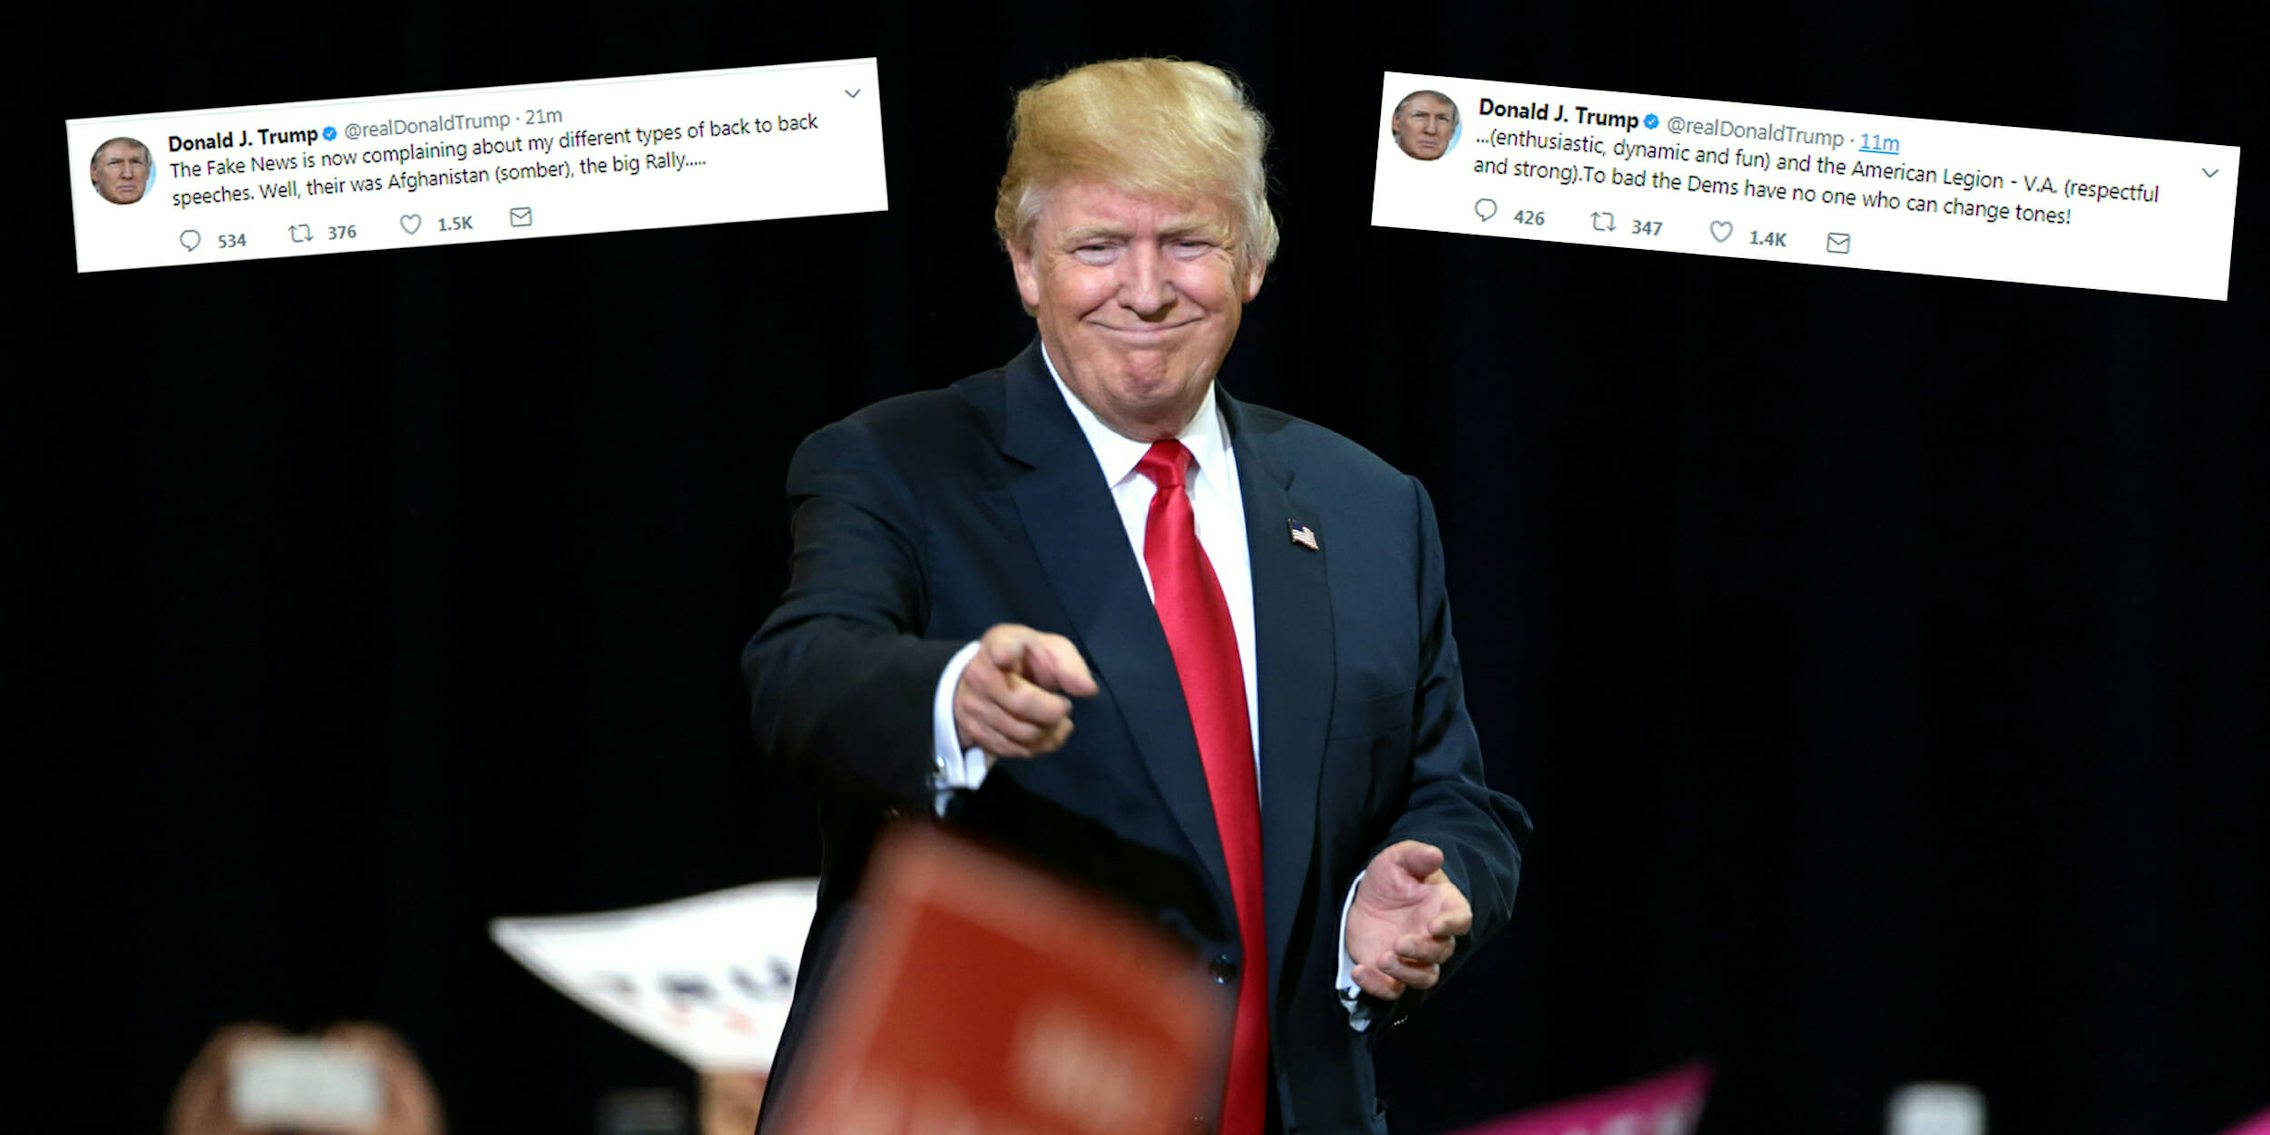 Donald Trump went on a tweetstorm on Thursday.